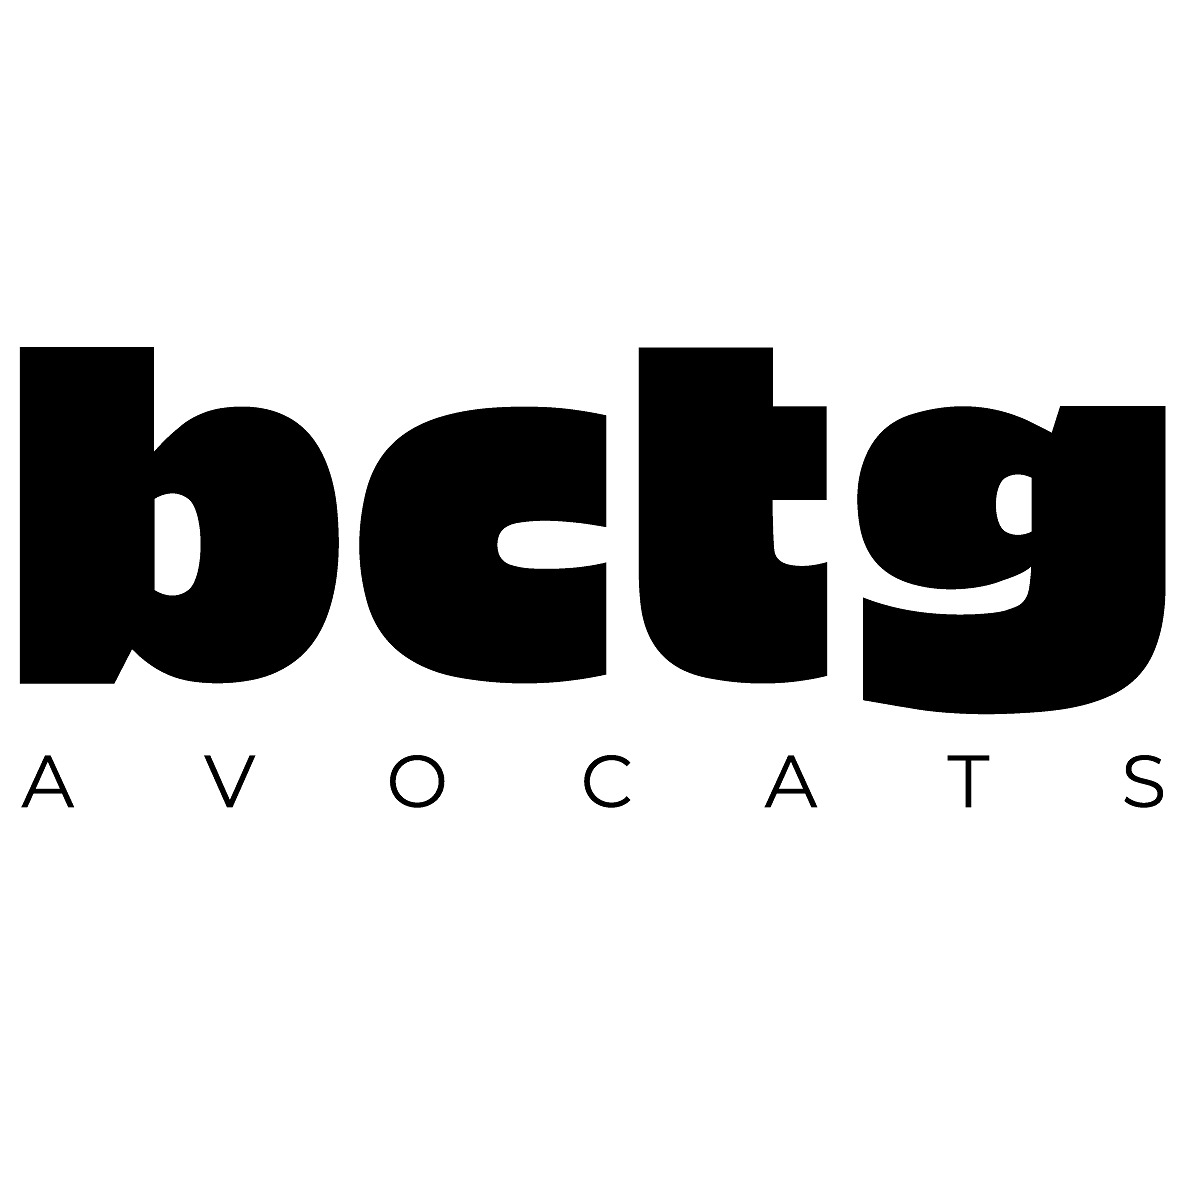 the BCTG Avocats logo.